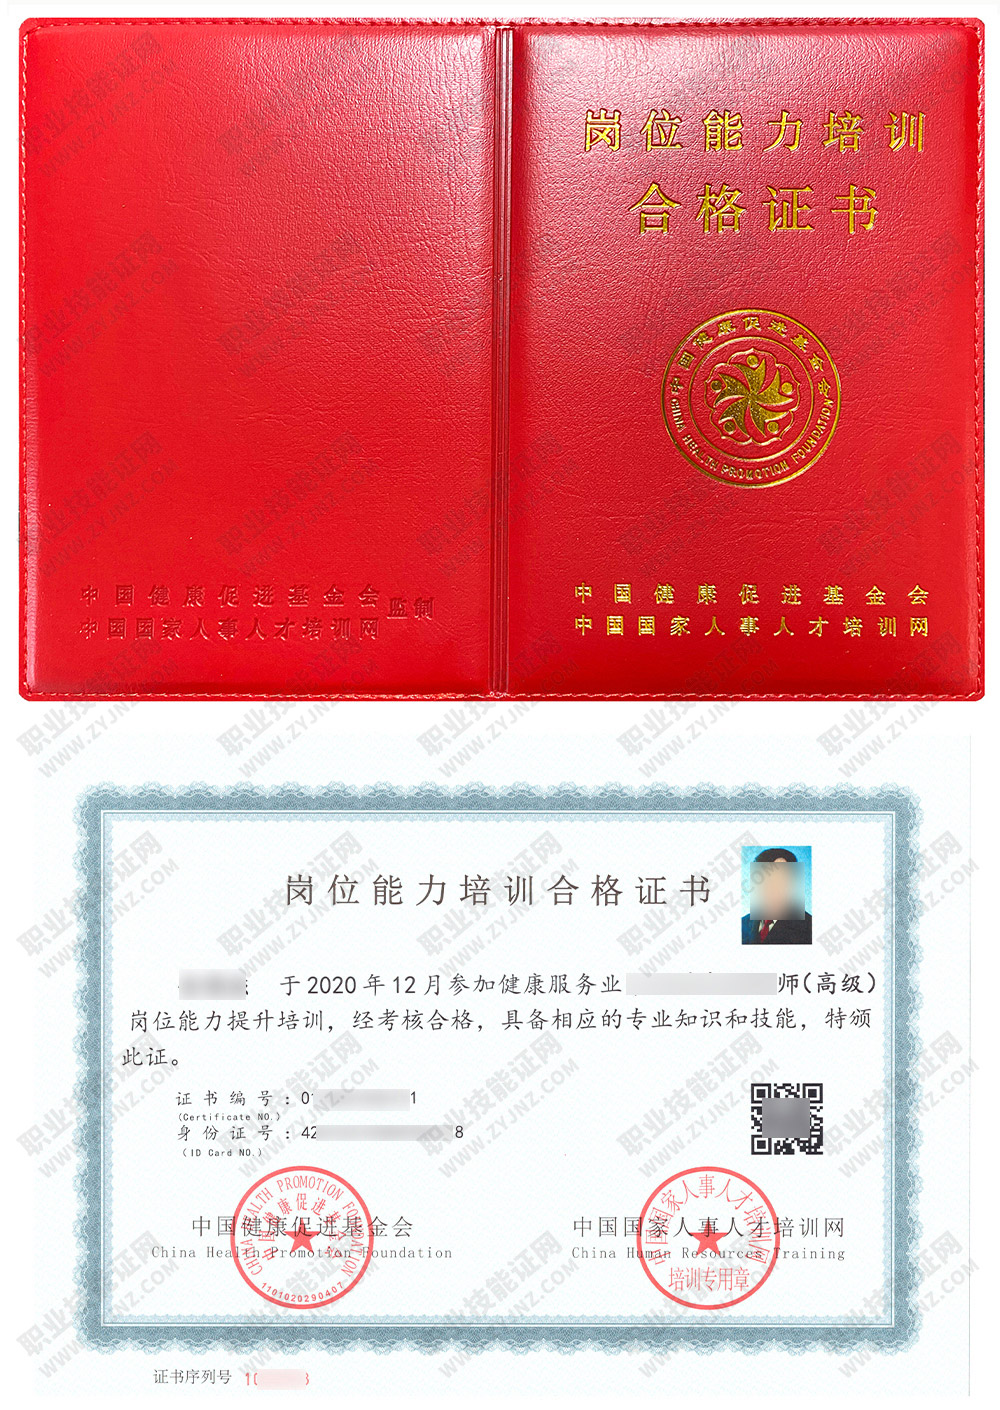 中国国家人事人才培训网 母婴护理师 岗位能力培训合格证书